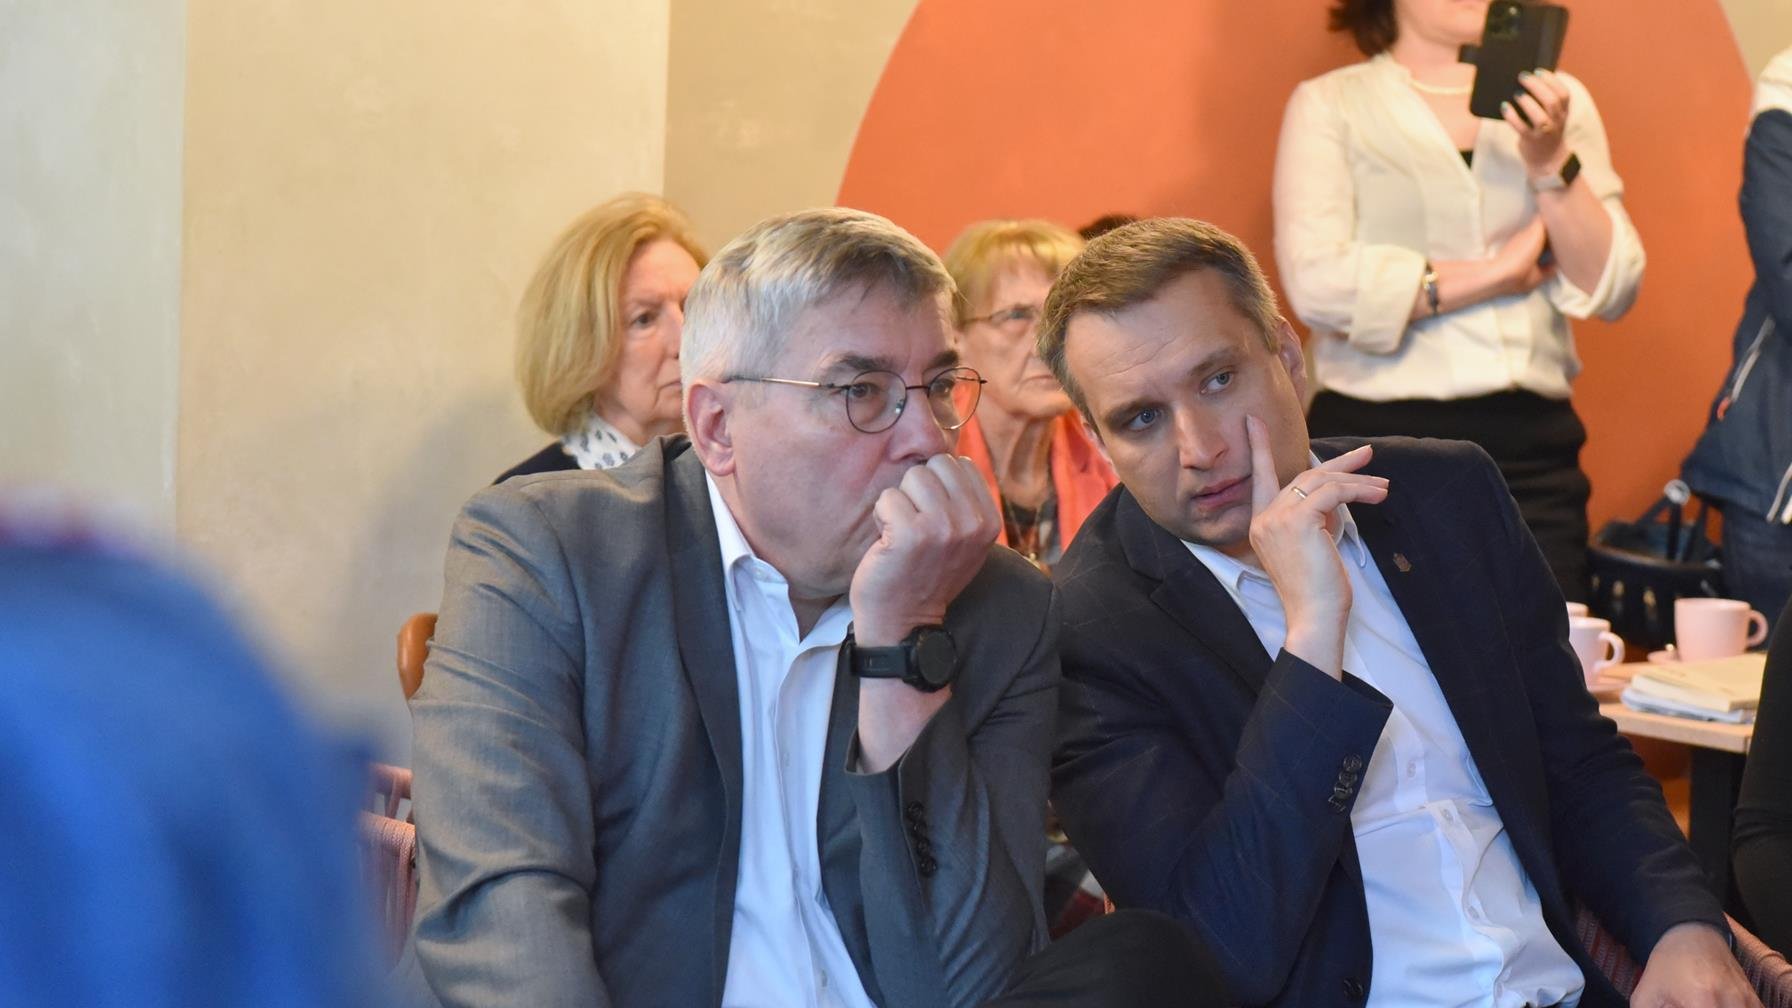 Na zdjęciu zastępca prezydenta Poznania i przewodniczący rady maista słuchają